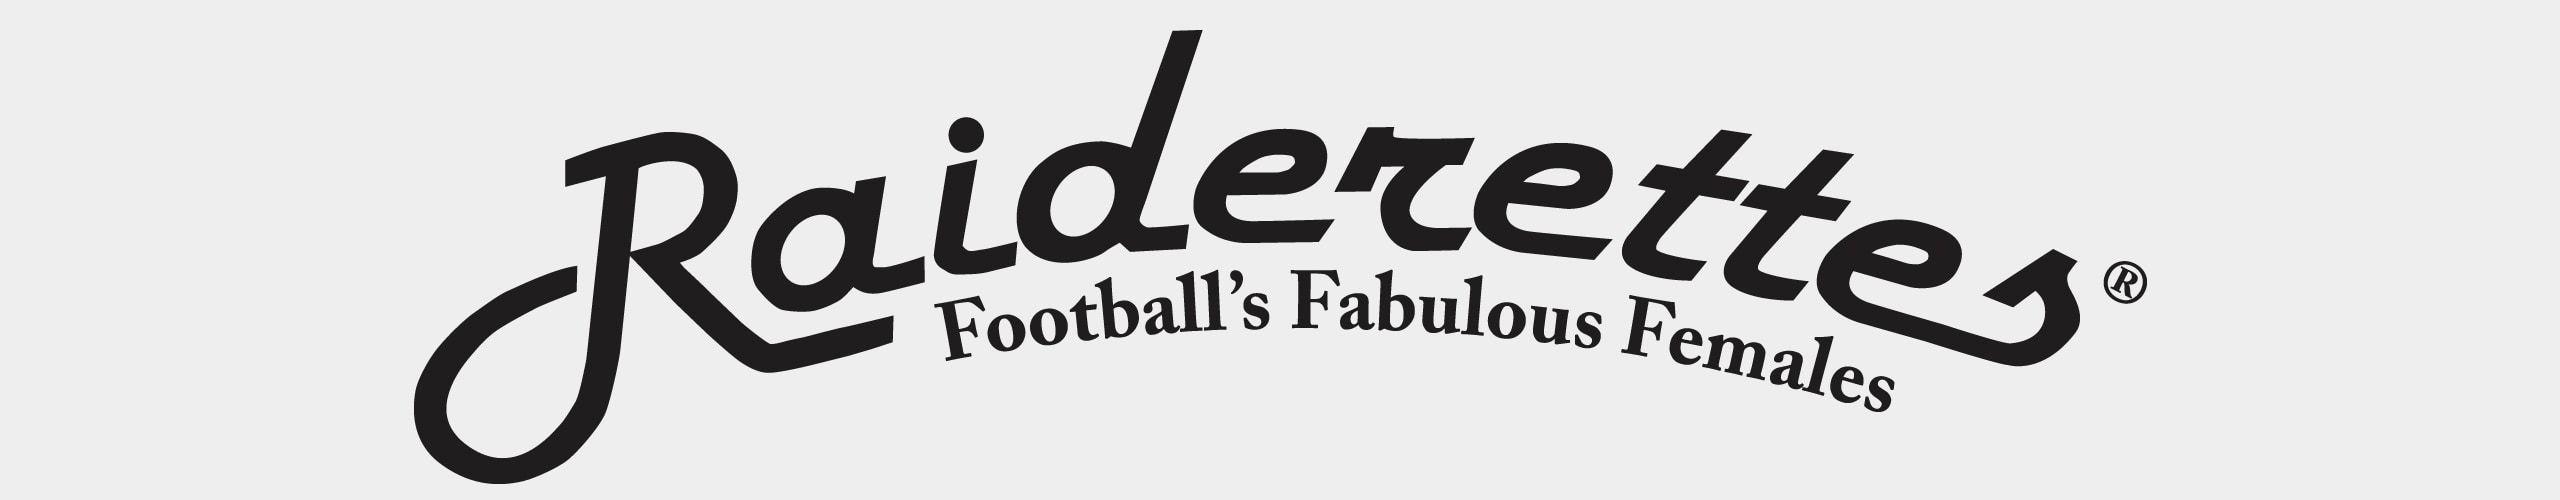 Raiderettes Logo - Raiderettes